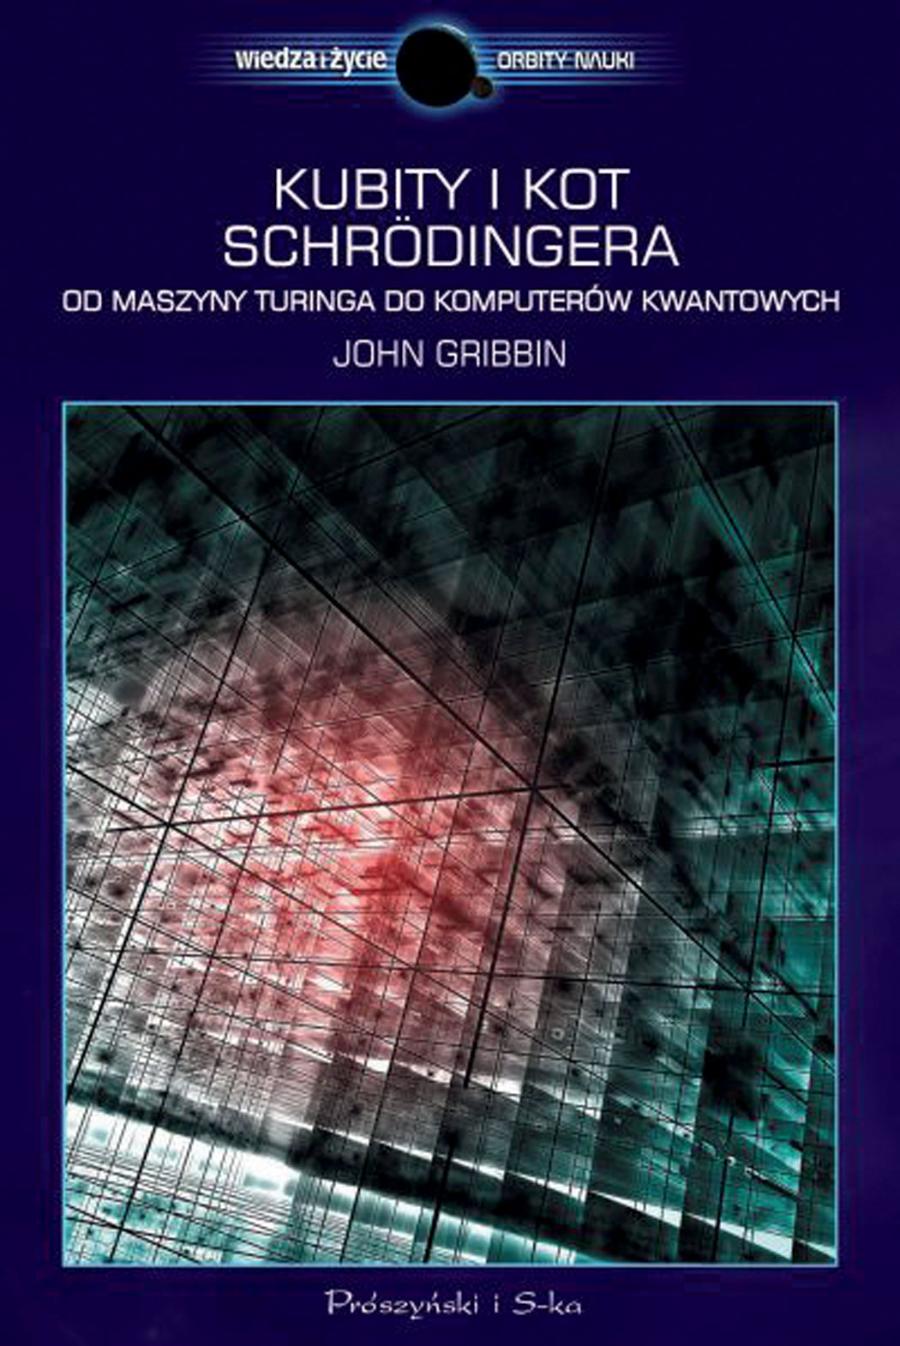 John Gribbin, Kubity i kot Schrödingera. Od maszyny Turinga do komputerów kwantowych, przeł. Marek Krośniak, Prószyński Media, Warszawa 2015.